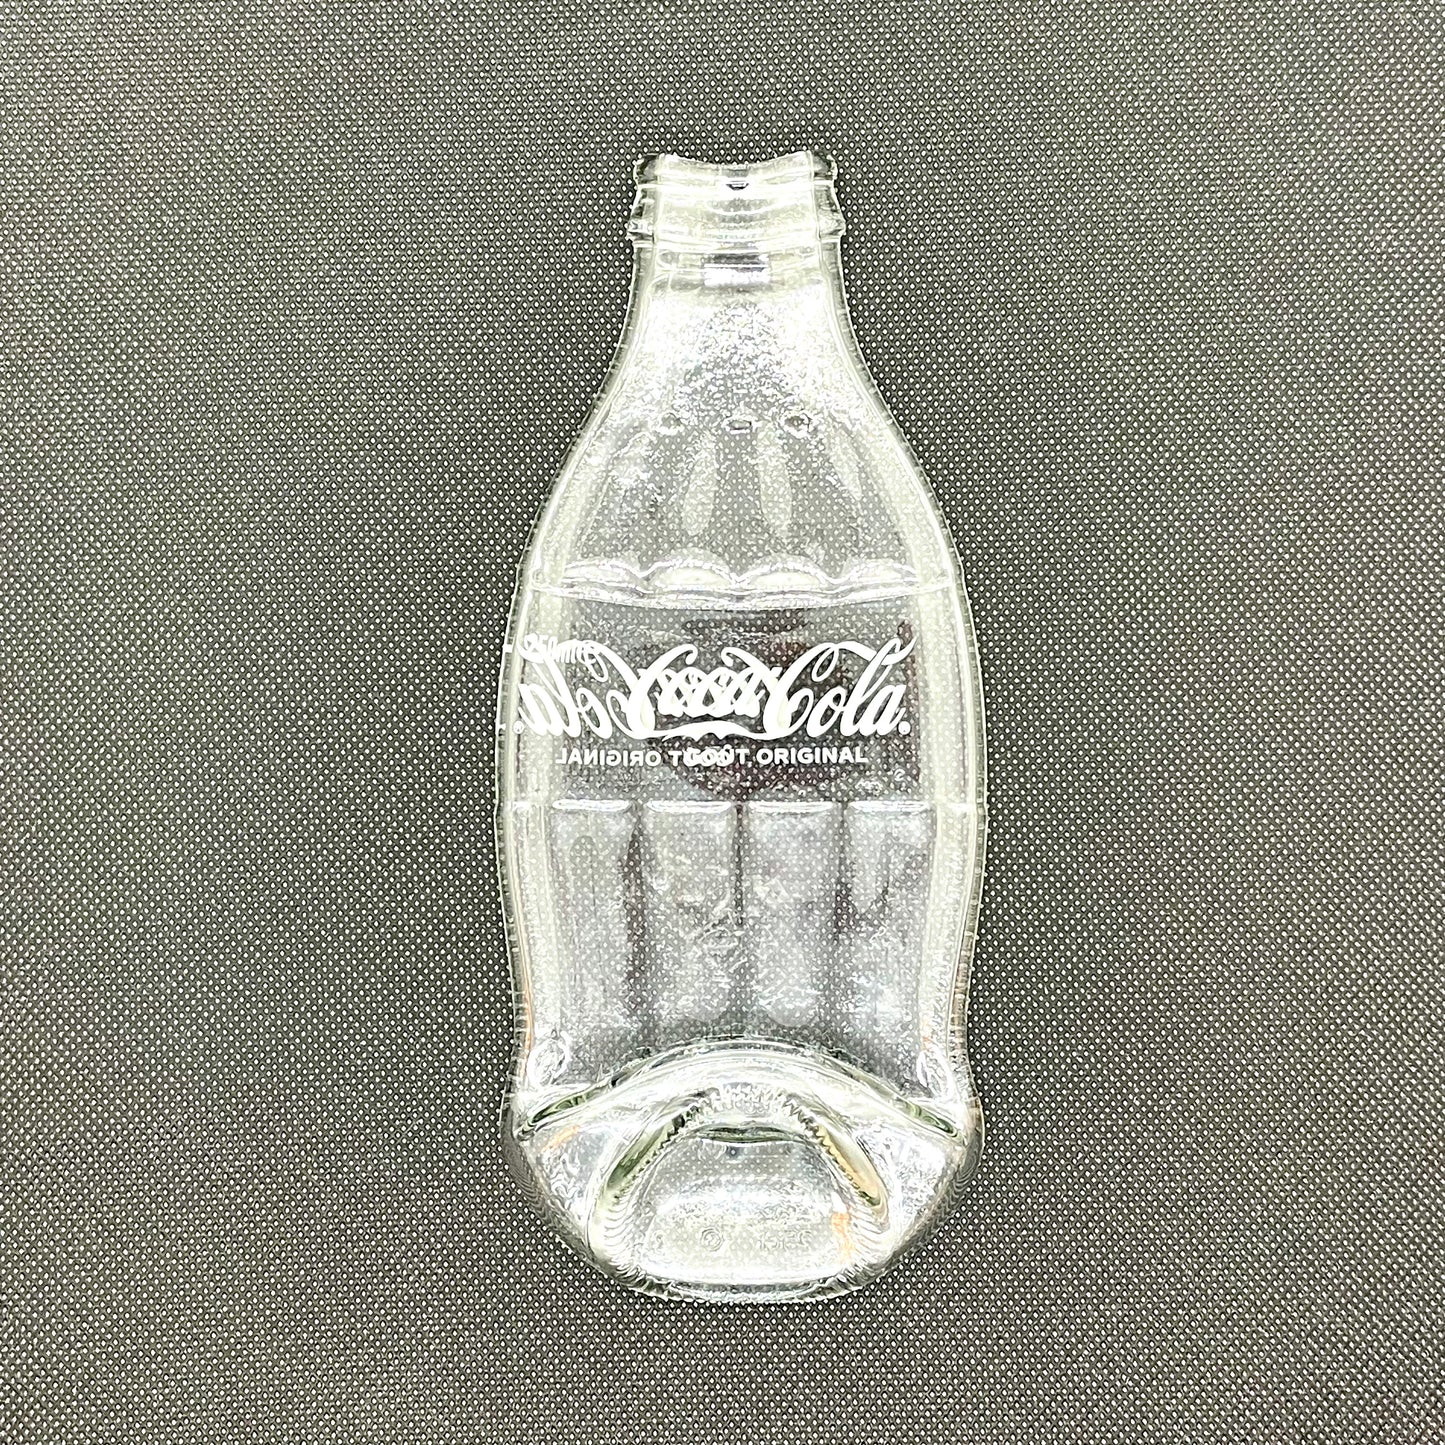 Mini COCA COLA molten glass bottle